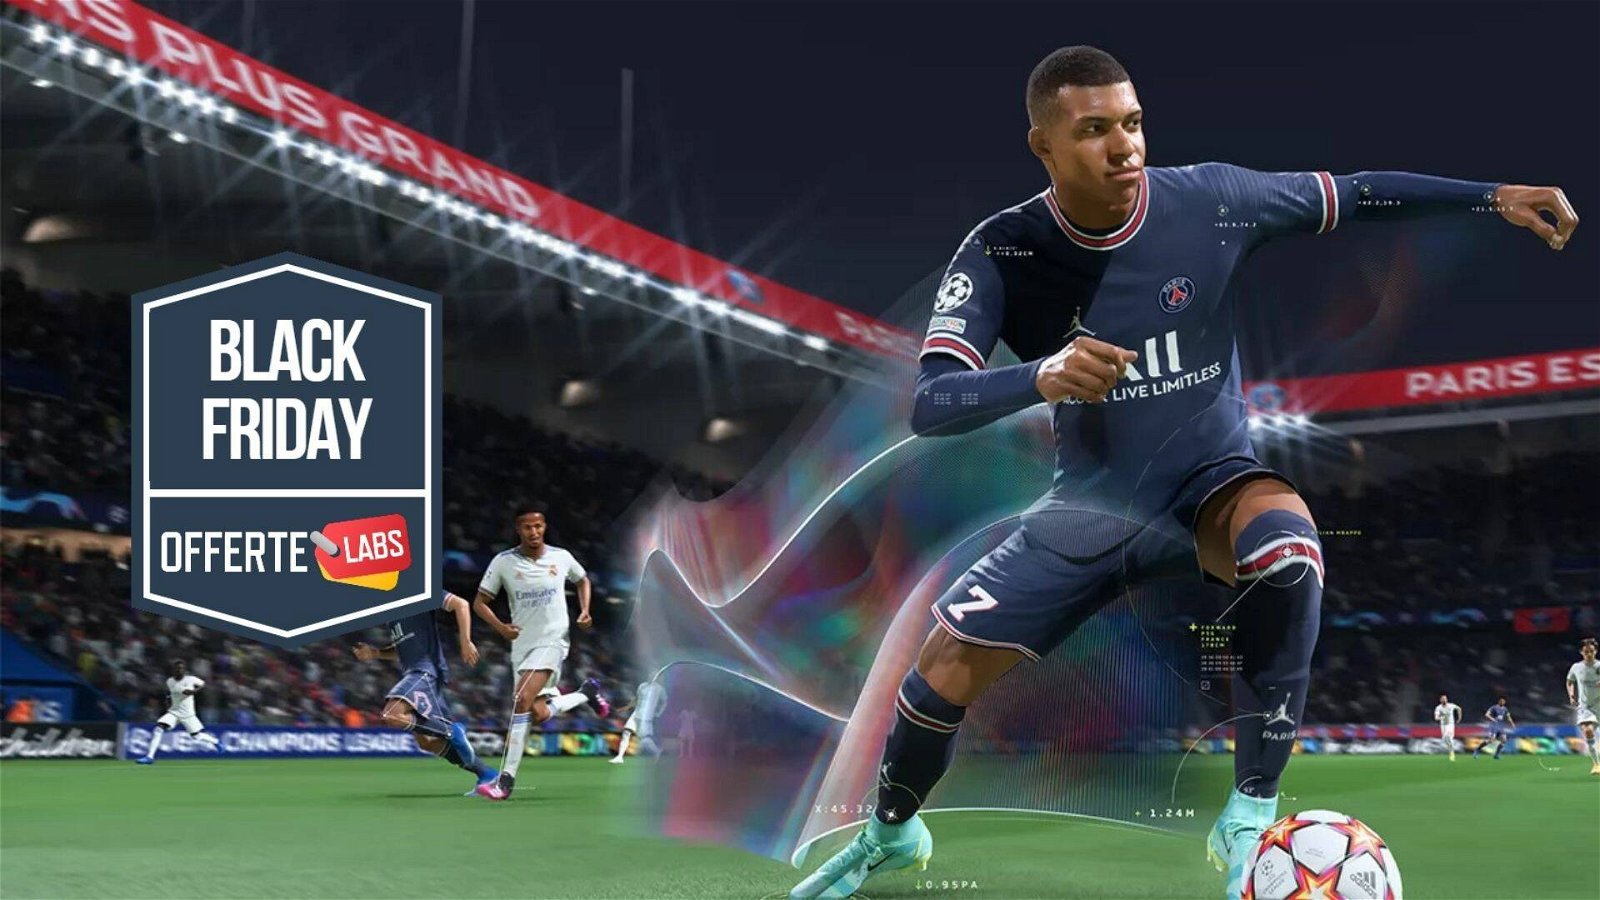 Immagine di FIFA 22 già in offerta per il Black Friday 2021!